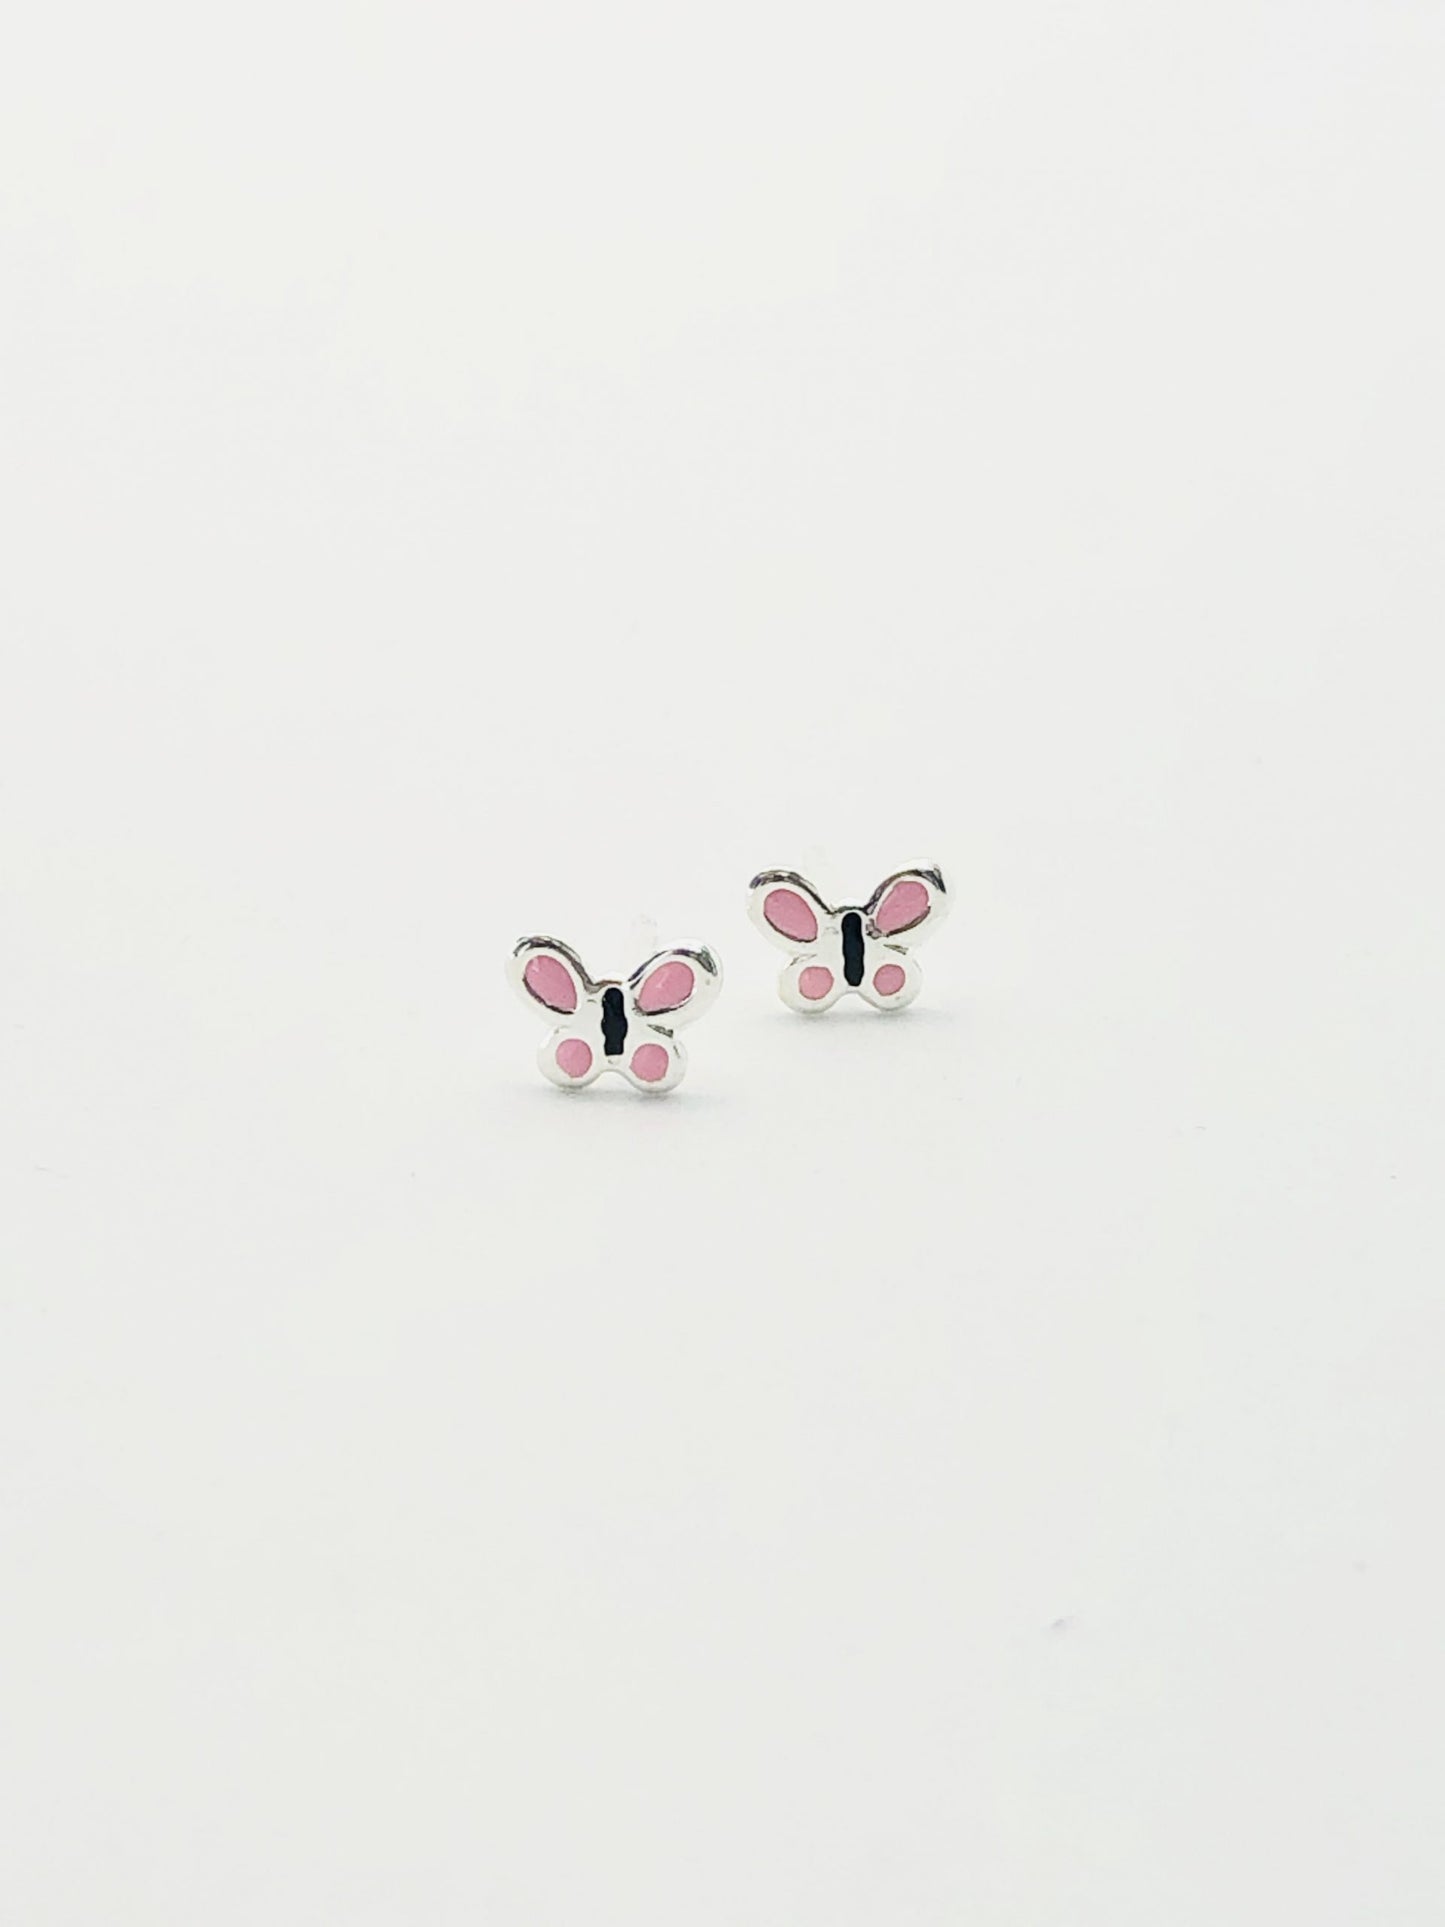 Sterling Silver Earrings - Pink Butterfly Studs